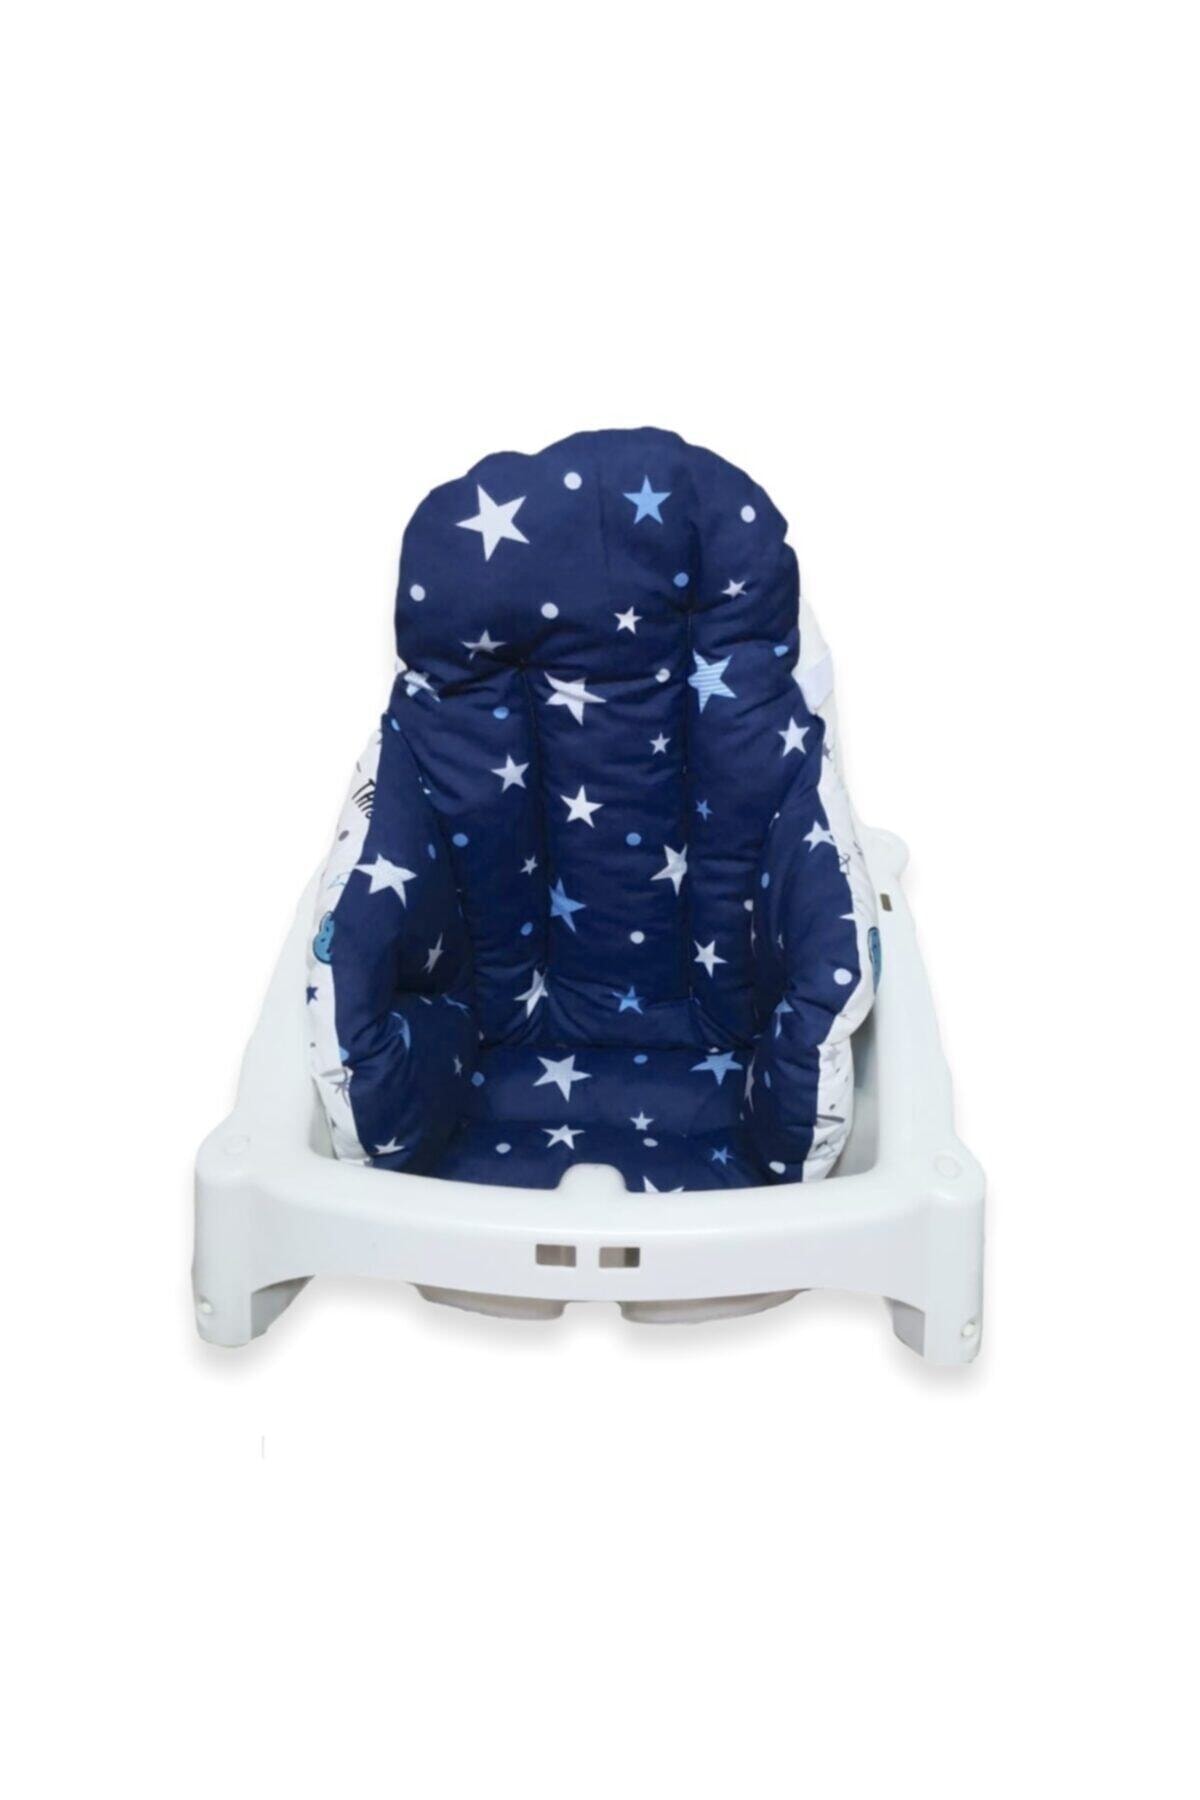 Bebek Özel Bebek Çocuk Mama Sandalyesi Minderi Uzay Astronot Ve Yıldızlı Lacivert Desenli